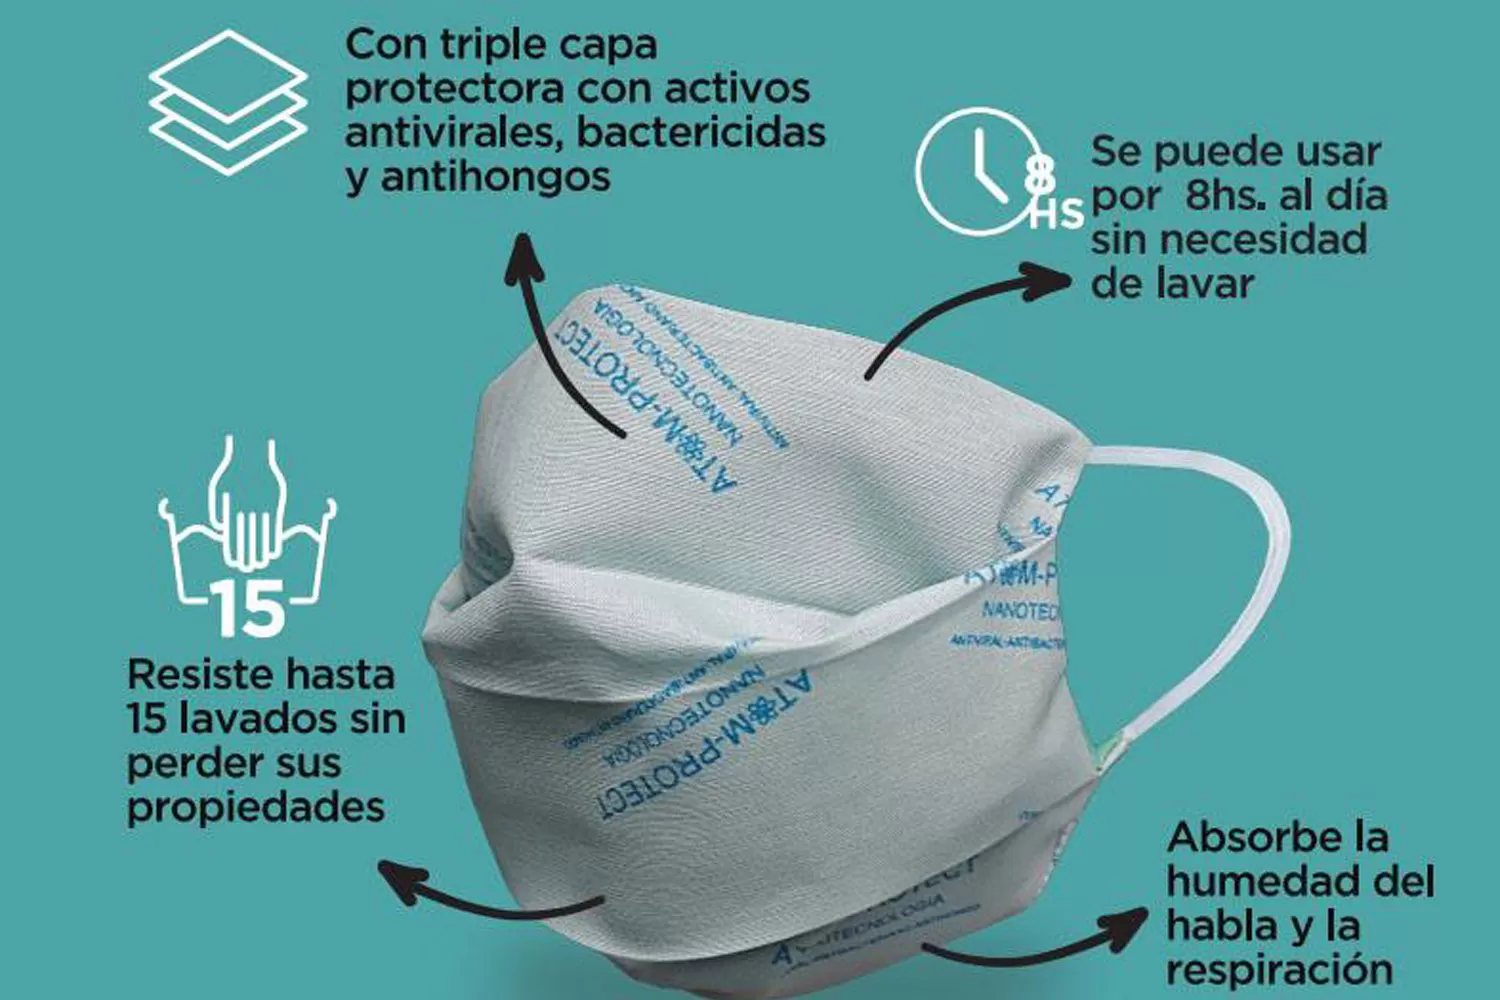 BARBIJOS. Los tapabocas Atom Protect del Conicet tienen tres capas de telas, que son tratadas para que adquieran propiedades antibacteriales, antivirales y antihongos.